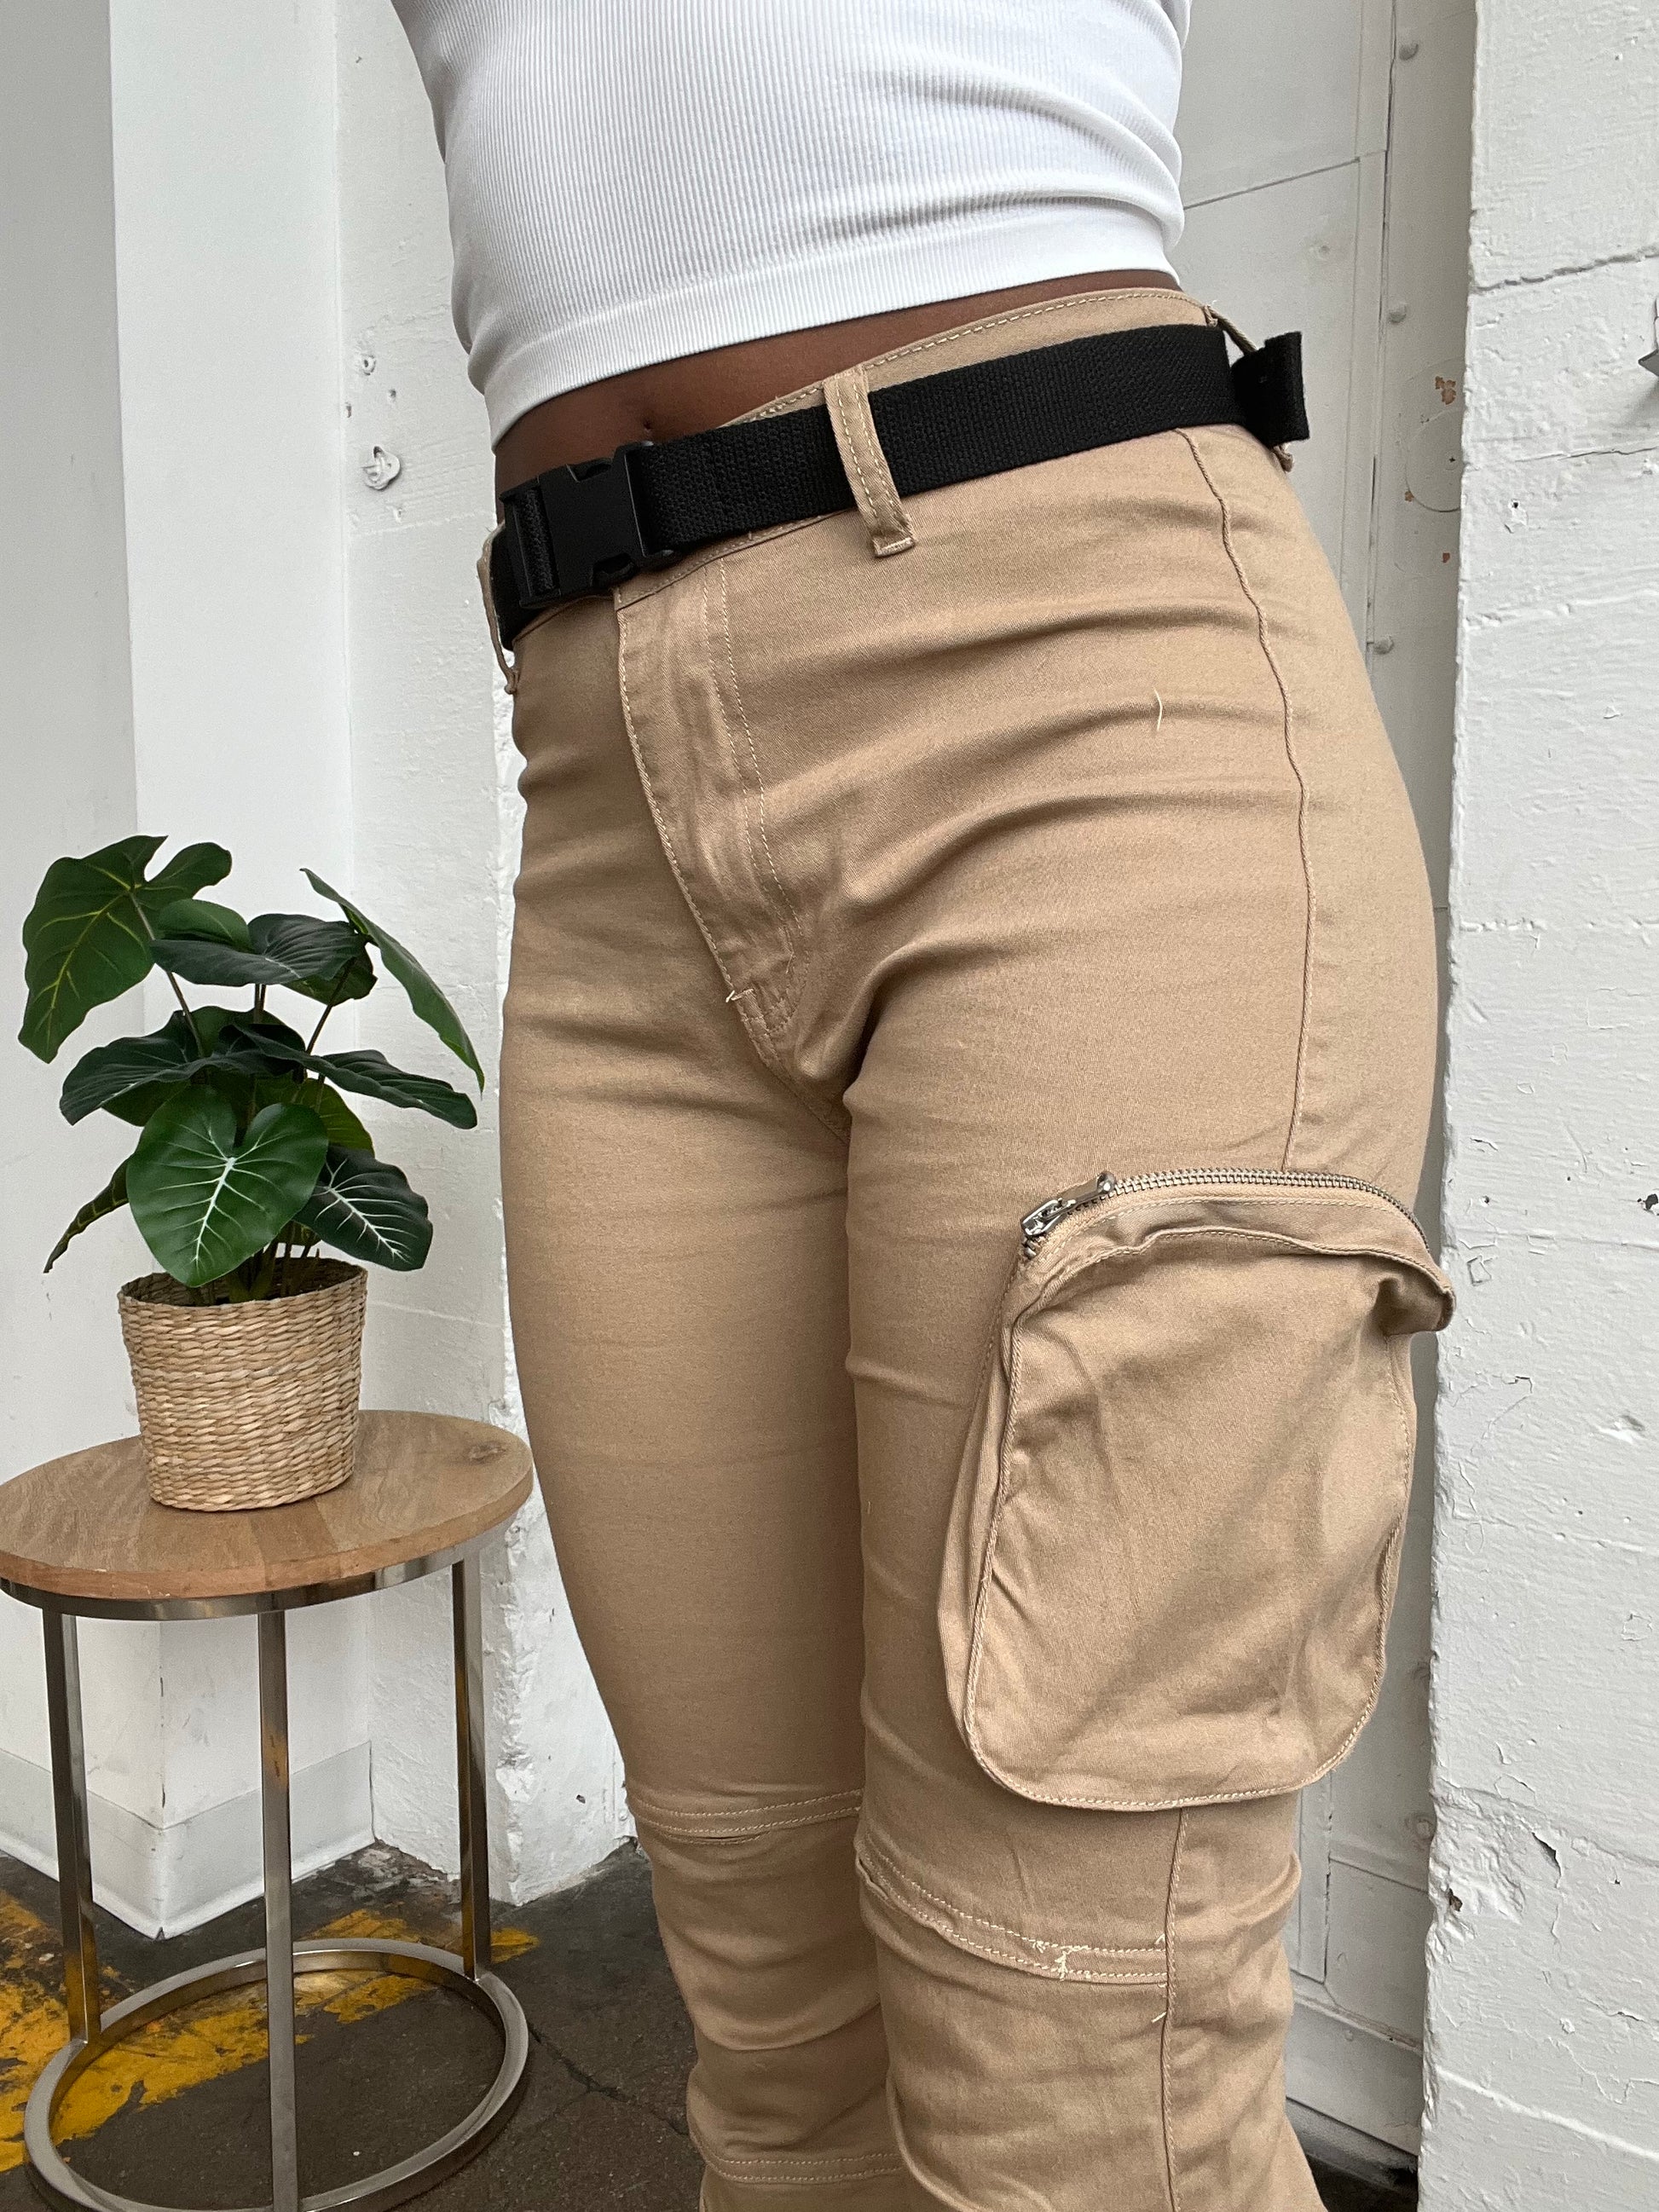 Khaki cargo pants